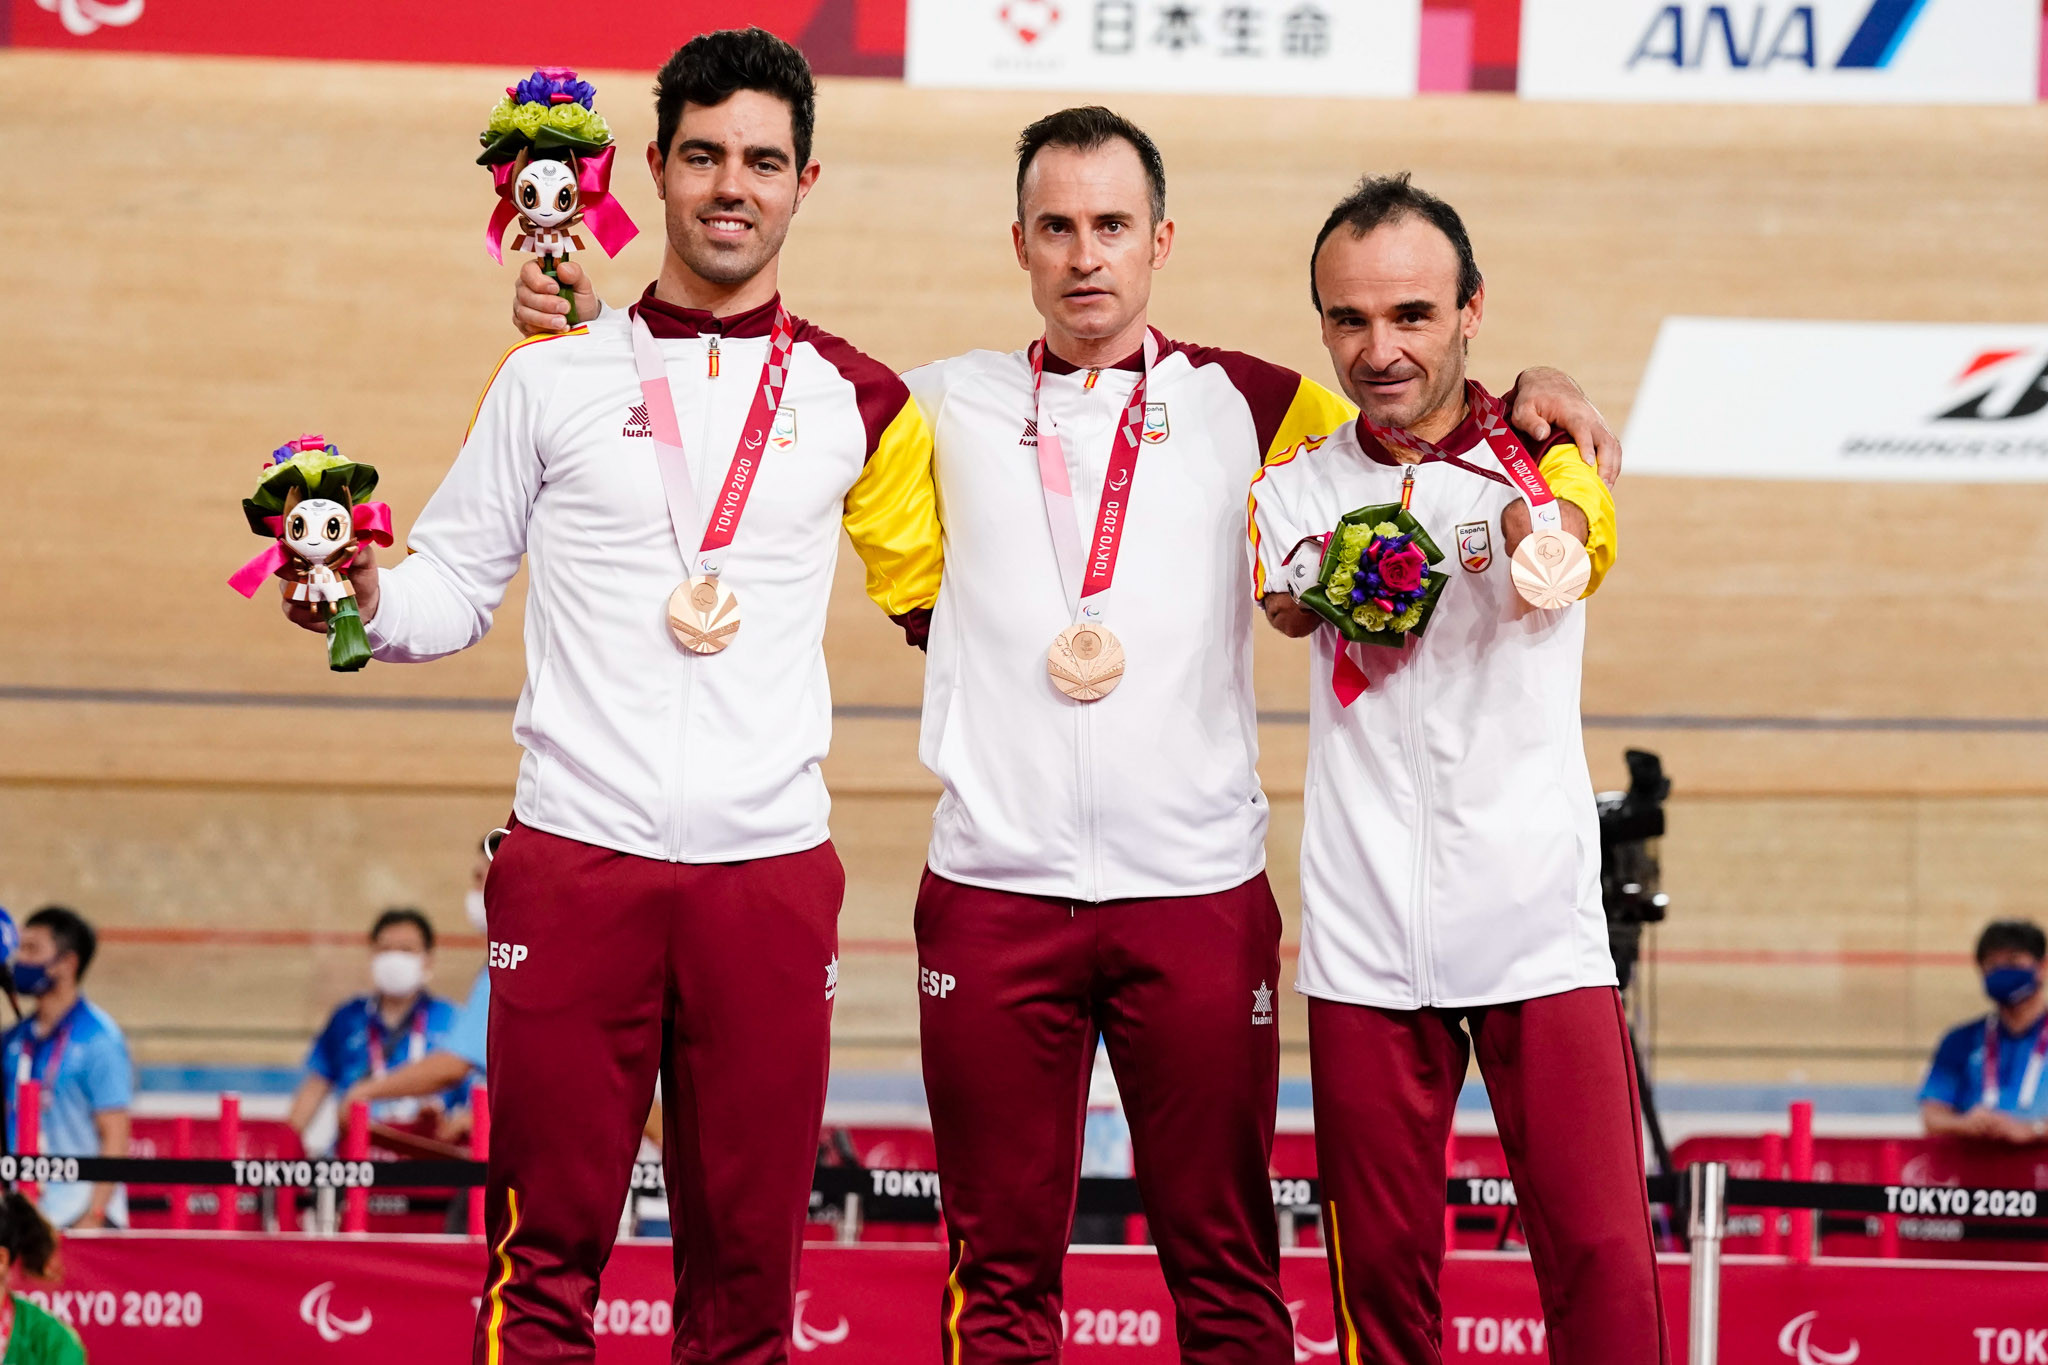  ​Los medallistas paralímpicos españoles en París 2024 recibirán los mismos premios que los olímpicos, por primera vez en la historia 